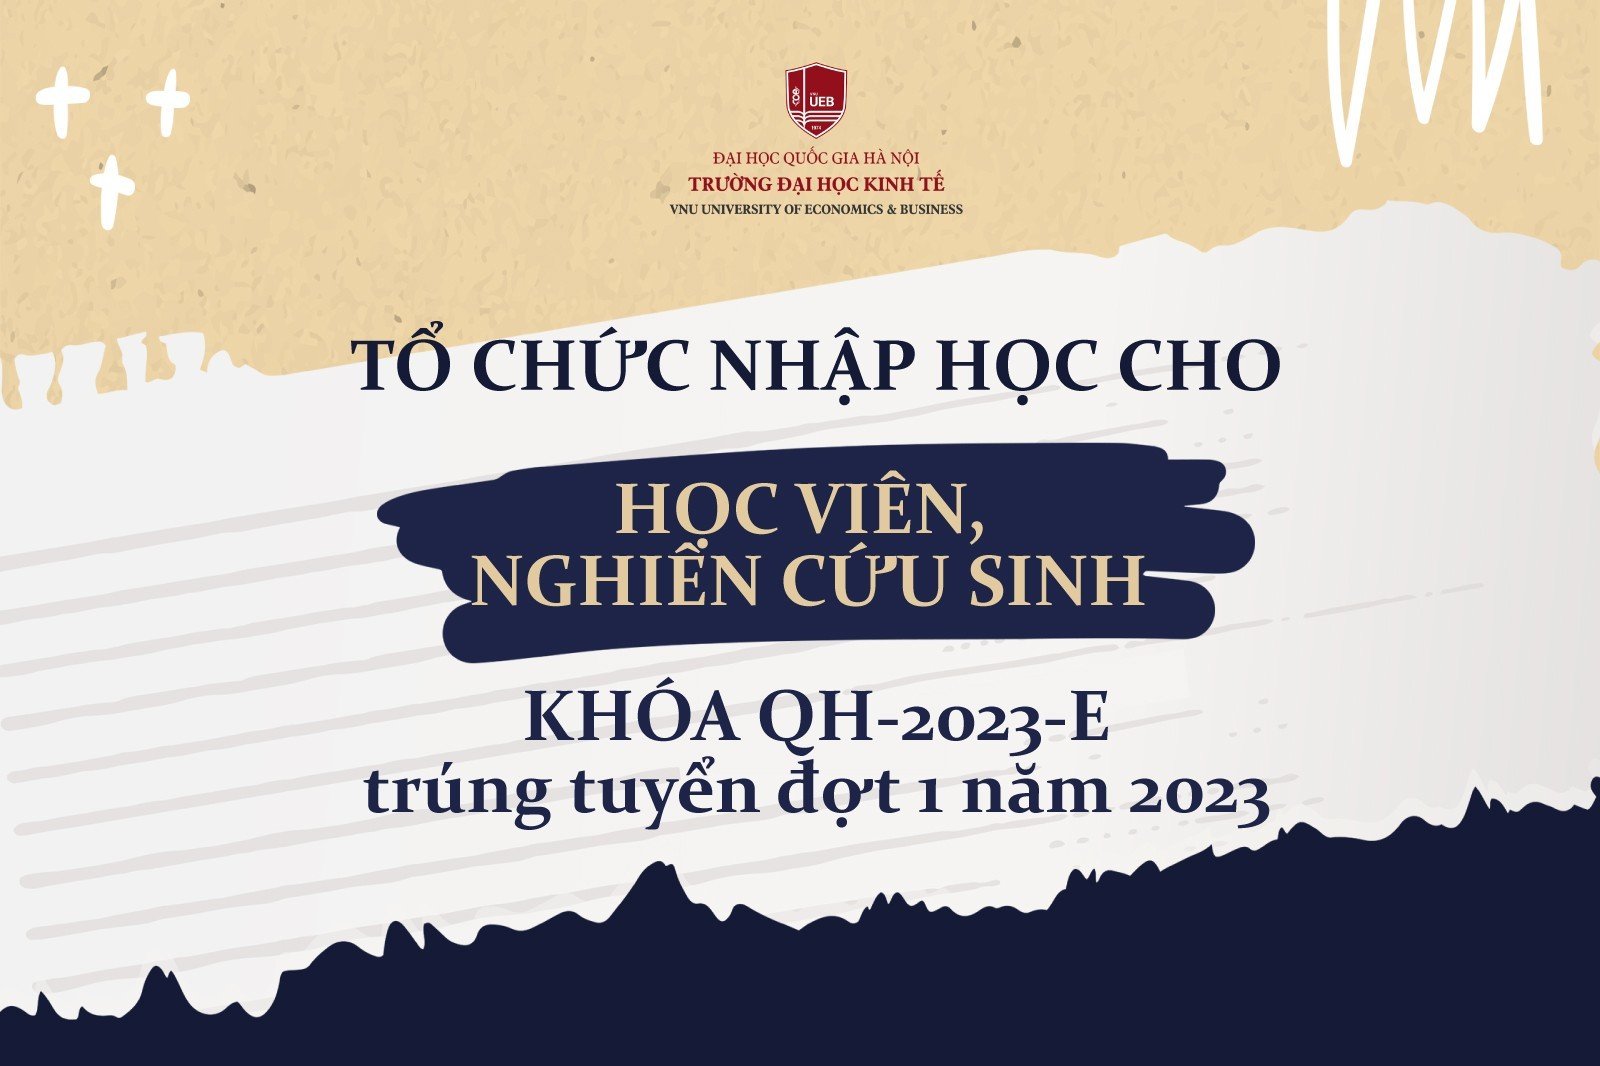 Tổ chức nhập học cho học viên, nghiên cứu sinh Khóa QH-2023-E trúng tuyển đợt 1 năm 2023